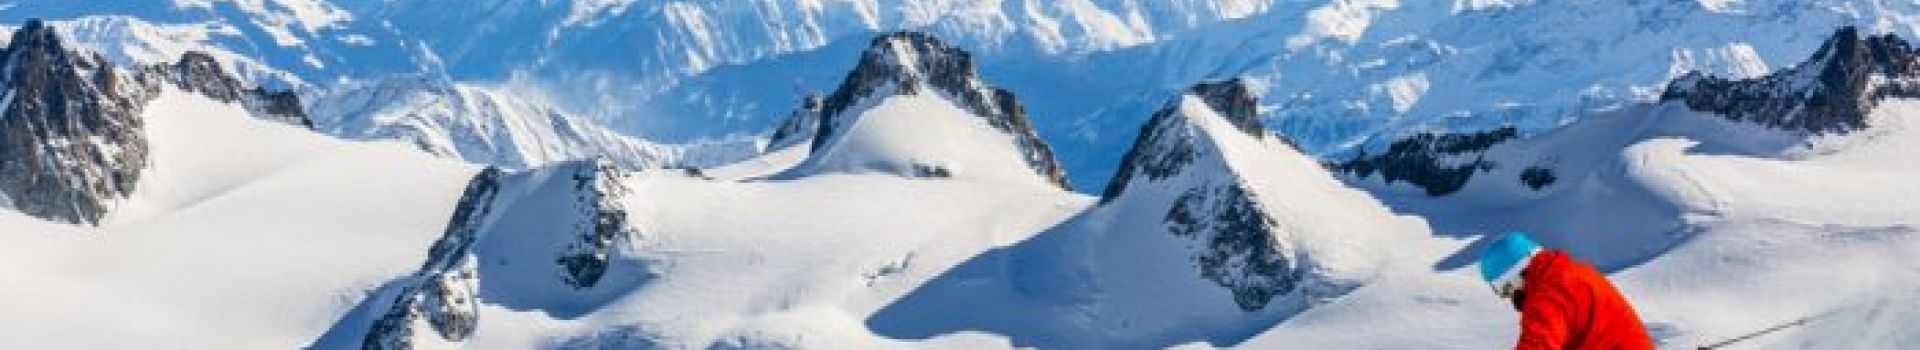 Ski Holiday Tips - Cassidy Travel Blog